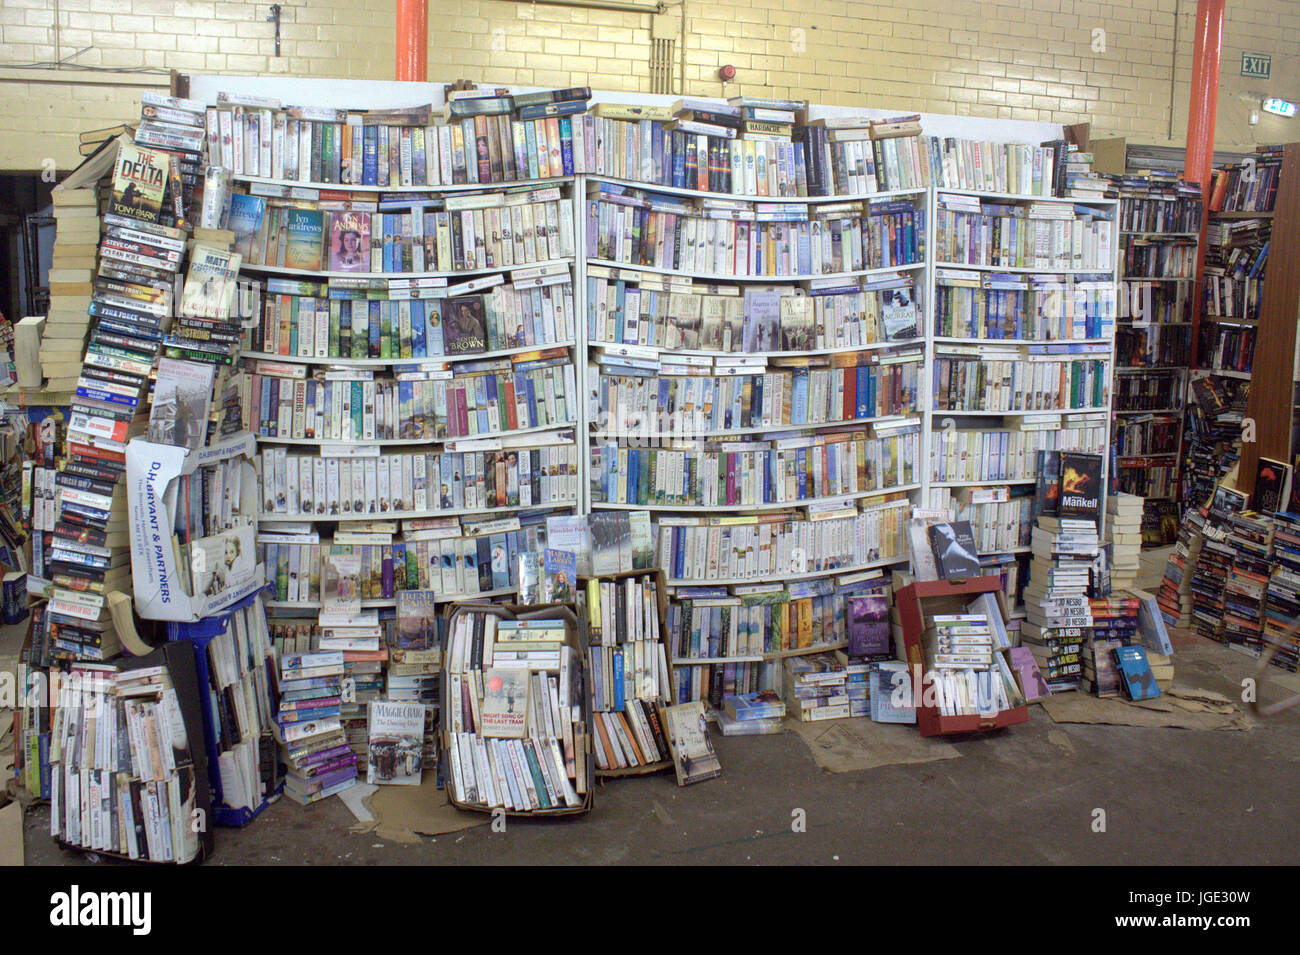 Sovraccarico libro scaffali in book shop di stallo di mercato la rottura sotto sforzo la piegatura attorcigliata sotto peso Foto Stock